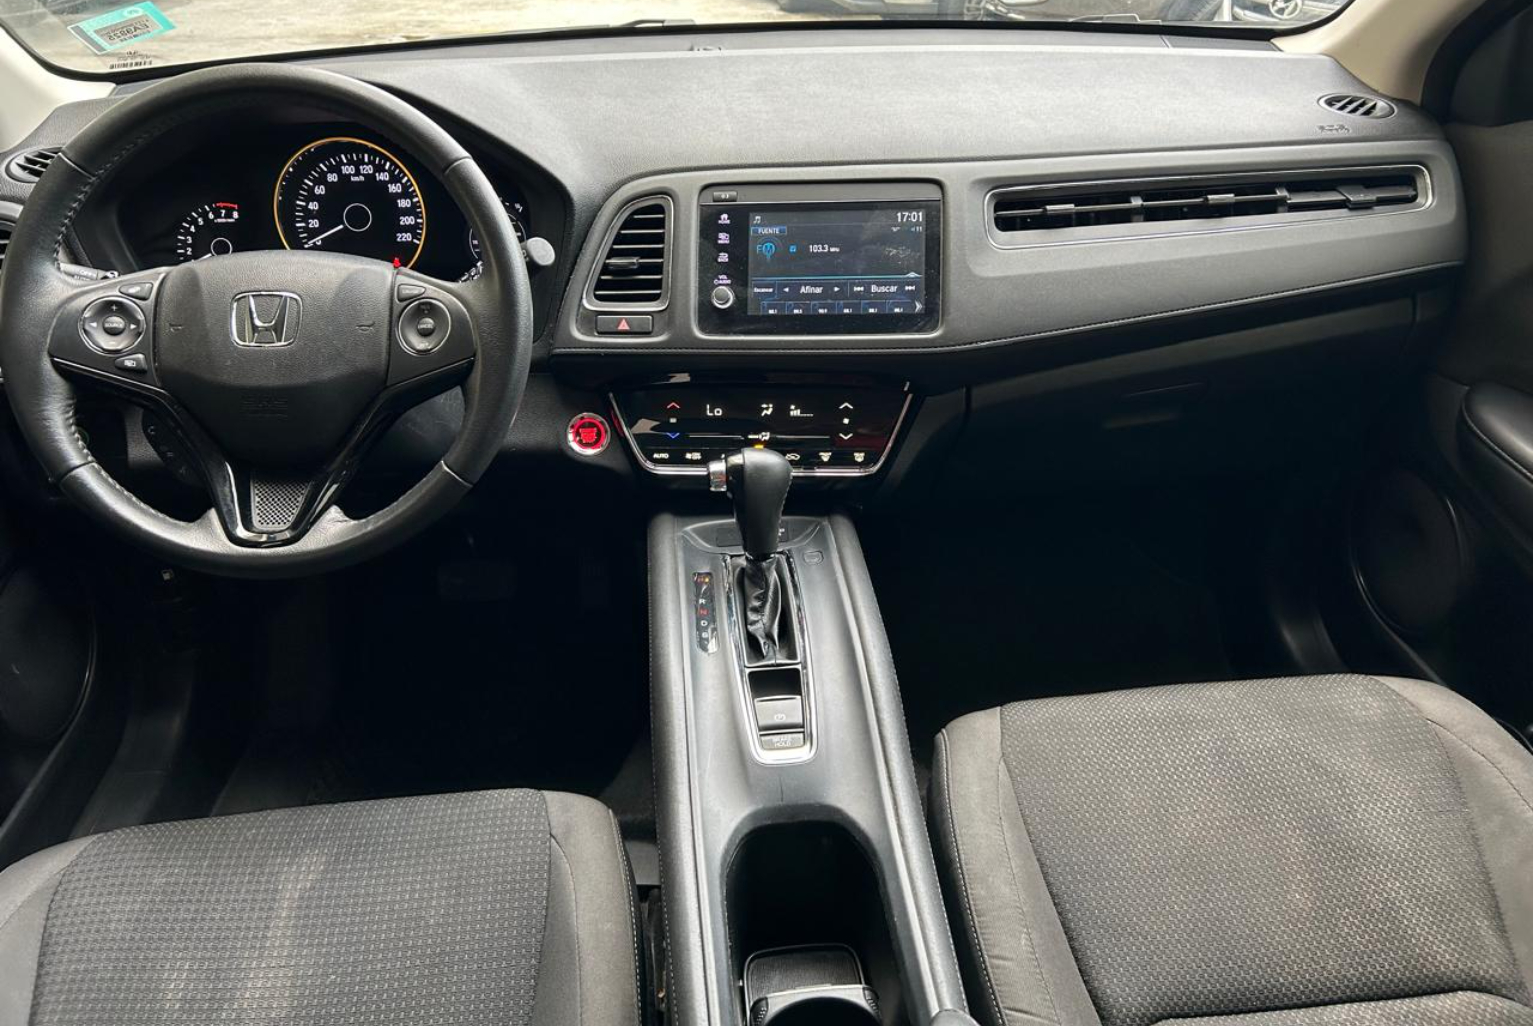 Honda HR-V 2021 Automático color Gris, Imagen #8